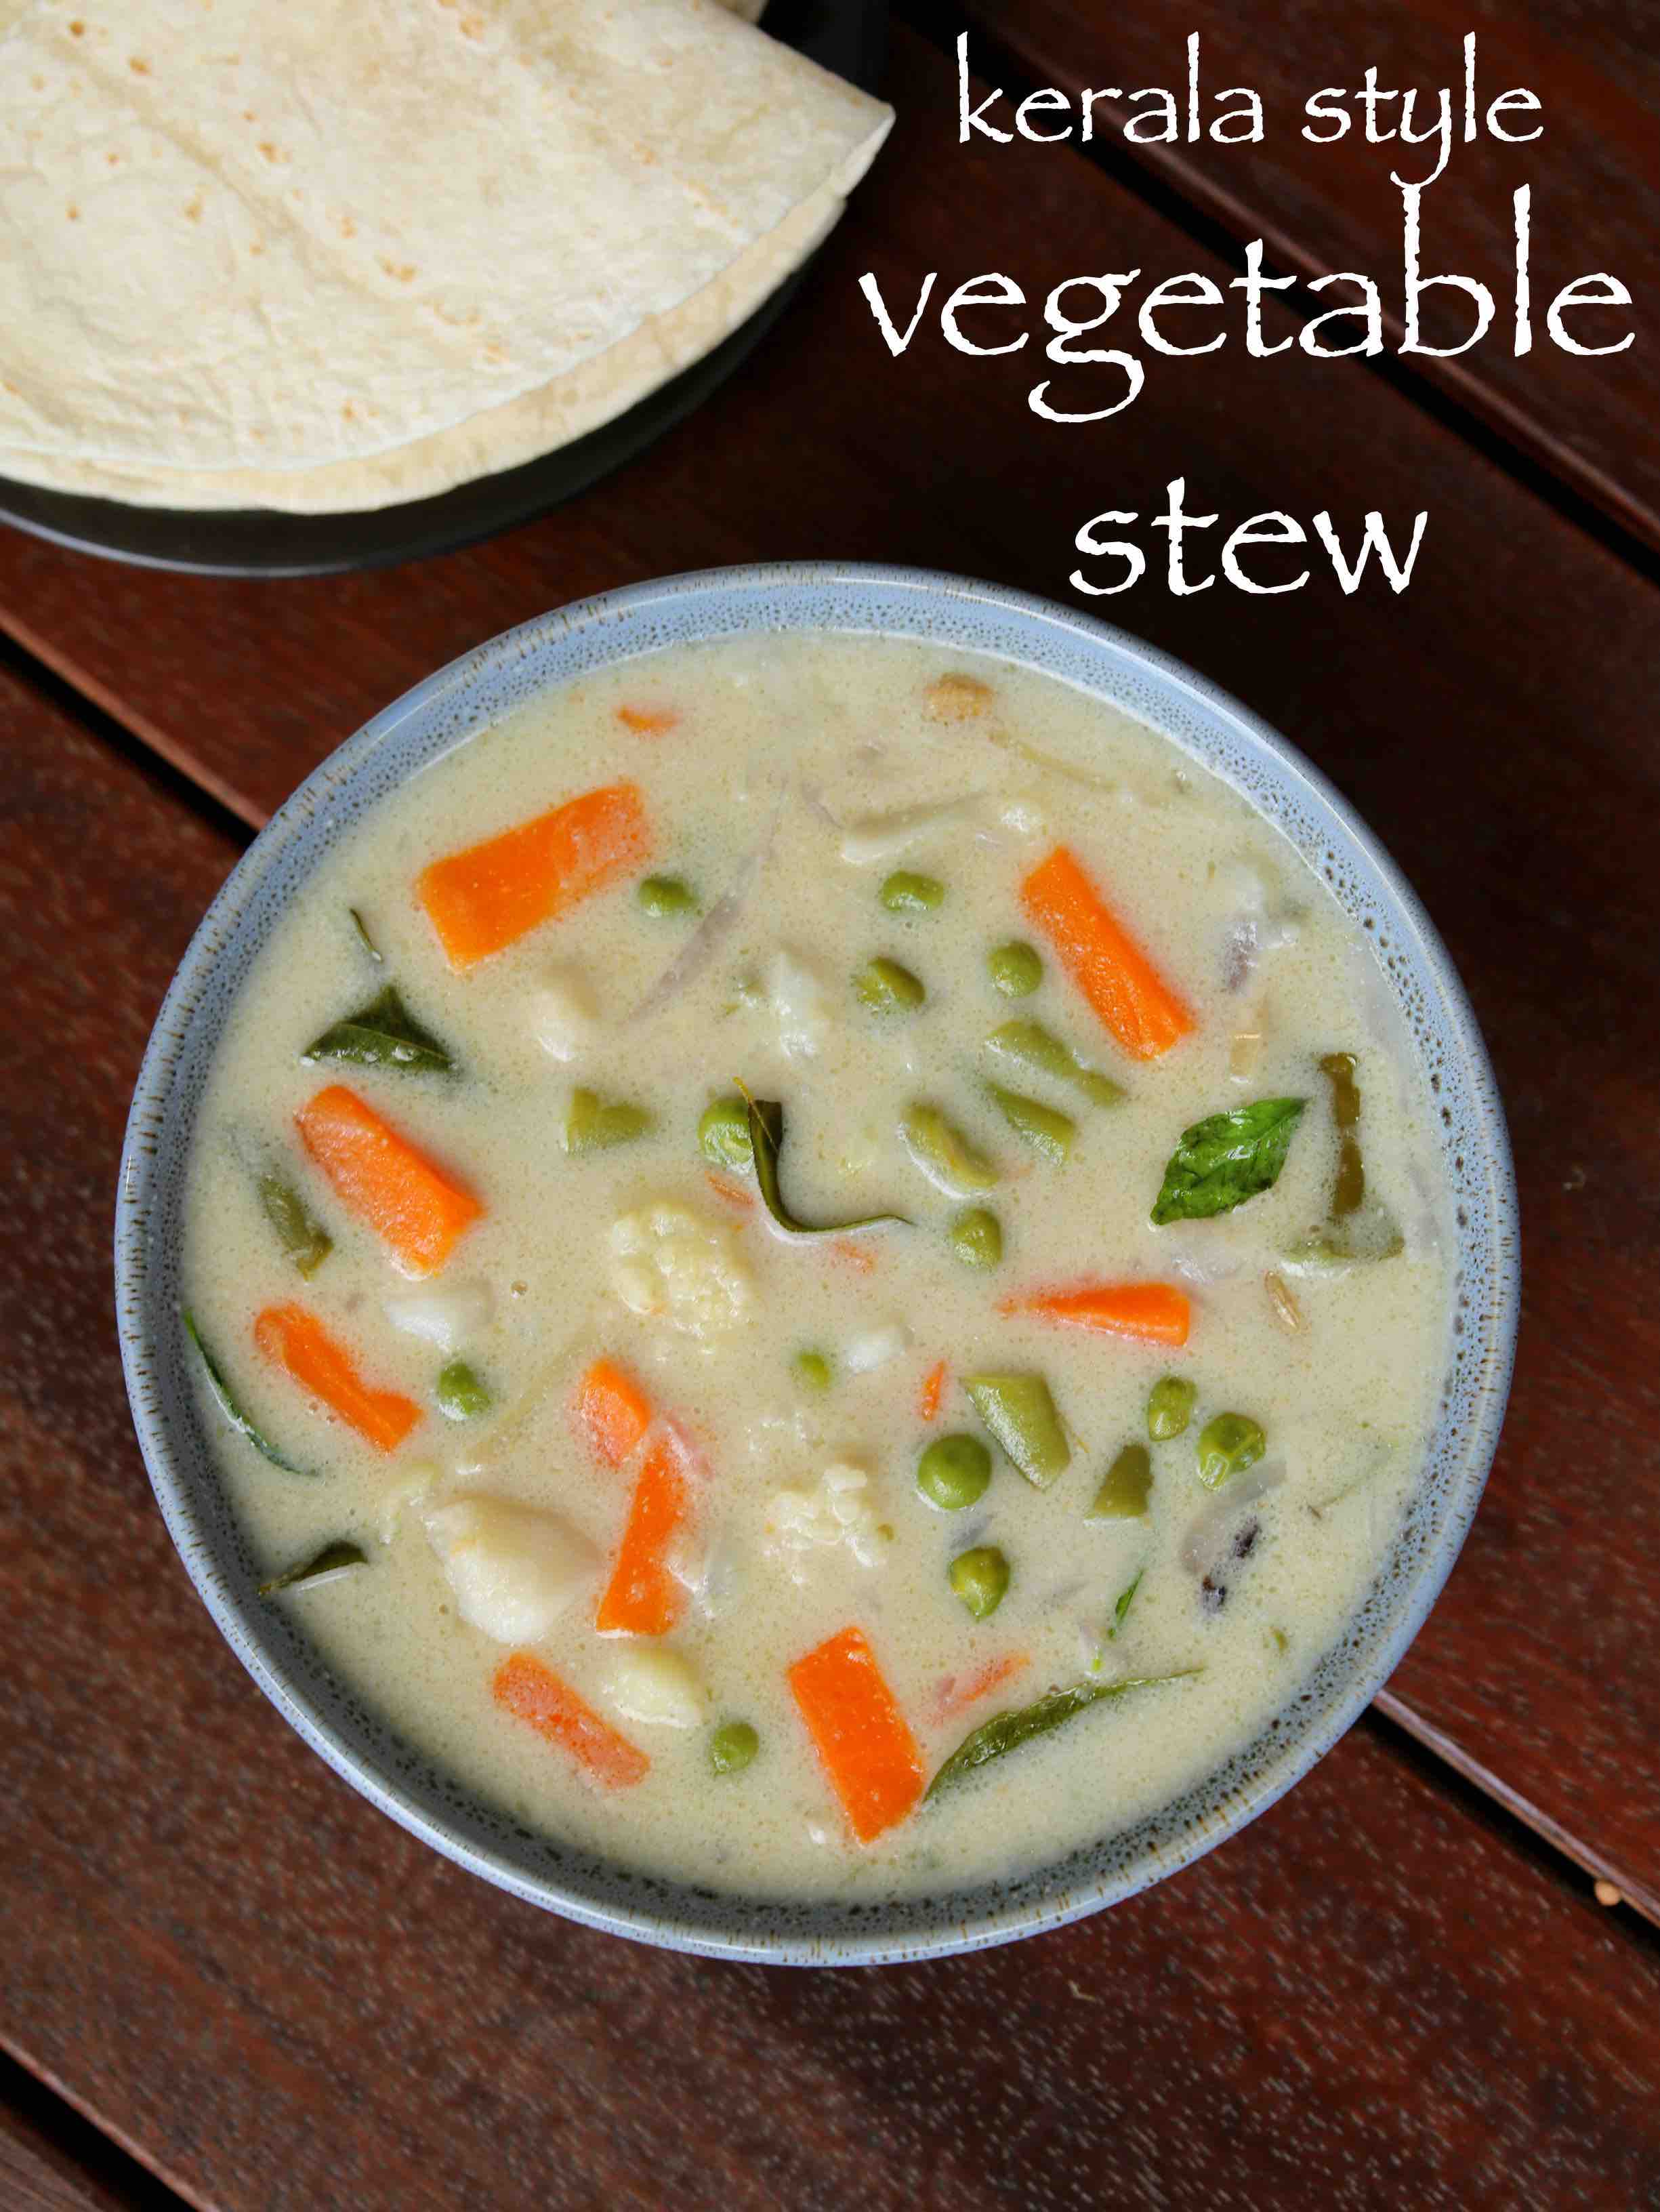 Vegetable Stew Recipe Veg Stew Recipe Kerala Style Vegetable Stew